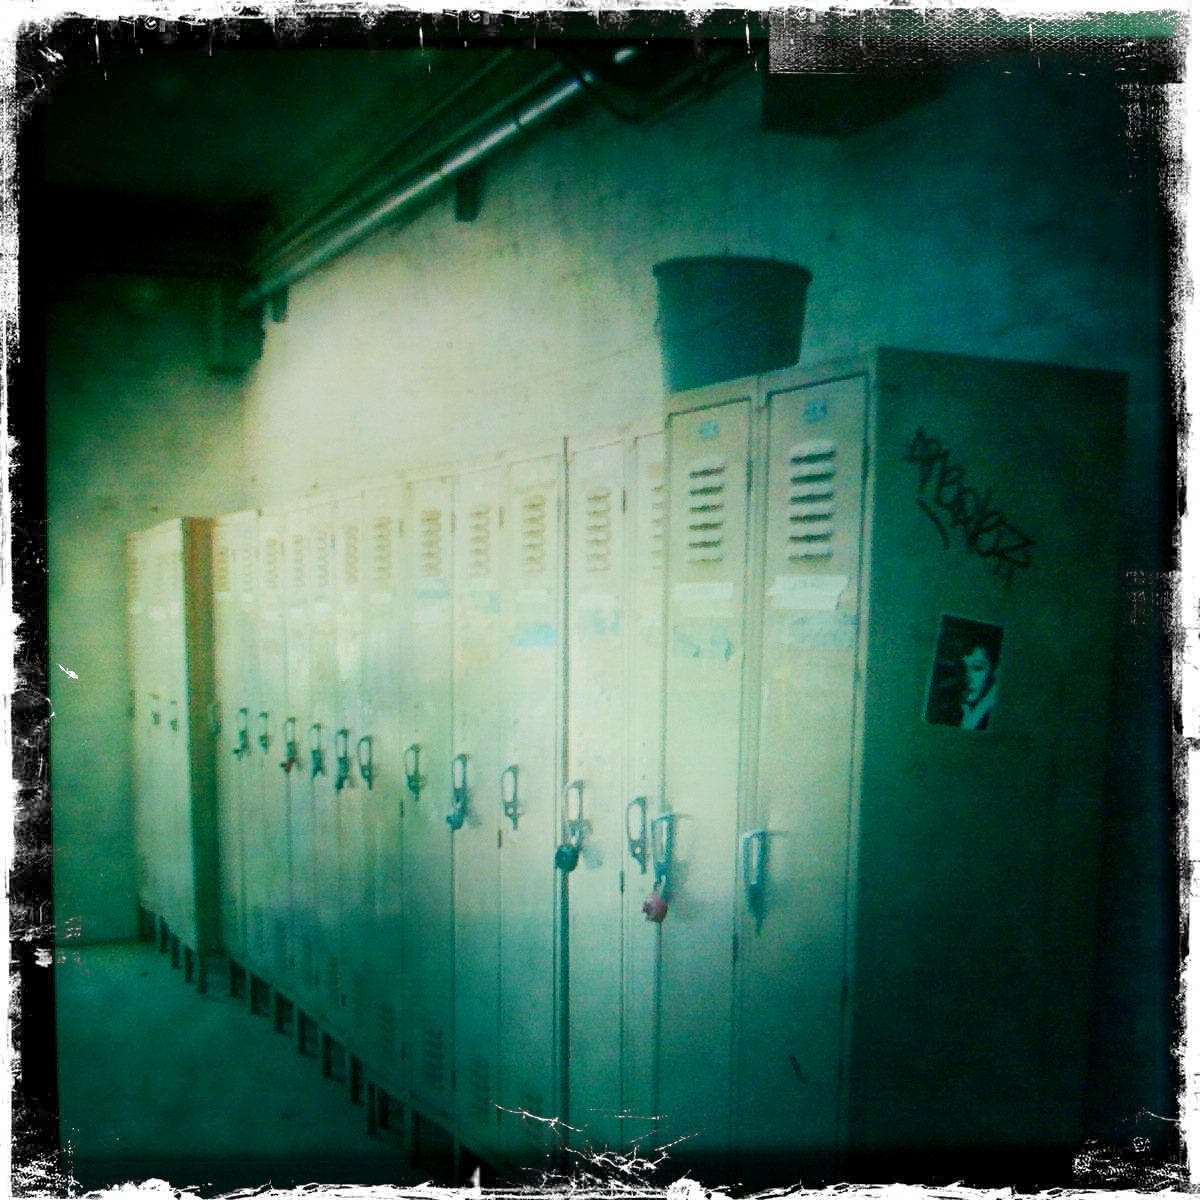 a row of lockers